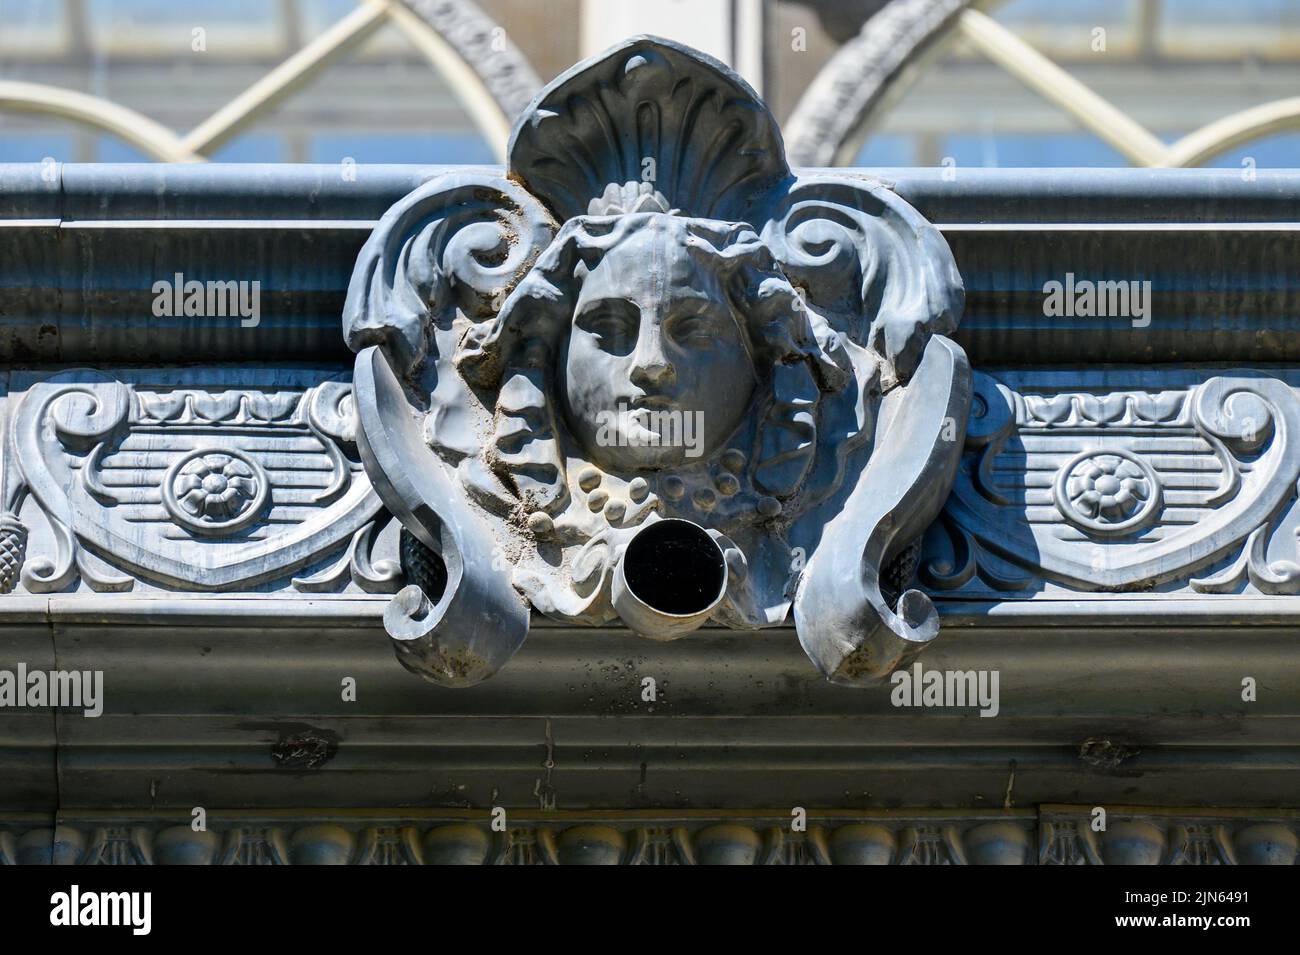 Gárgola exterior o detalle arquitectónico que decoran el exterior del Palacio de Cristal, ubicado en el Parque del Buen Retiro. Foto de stock